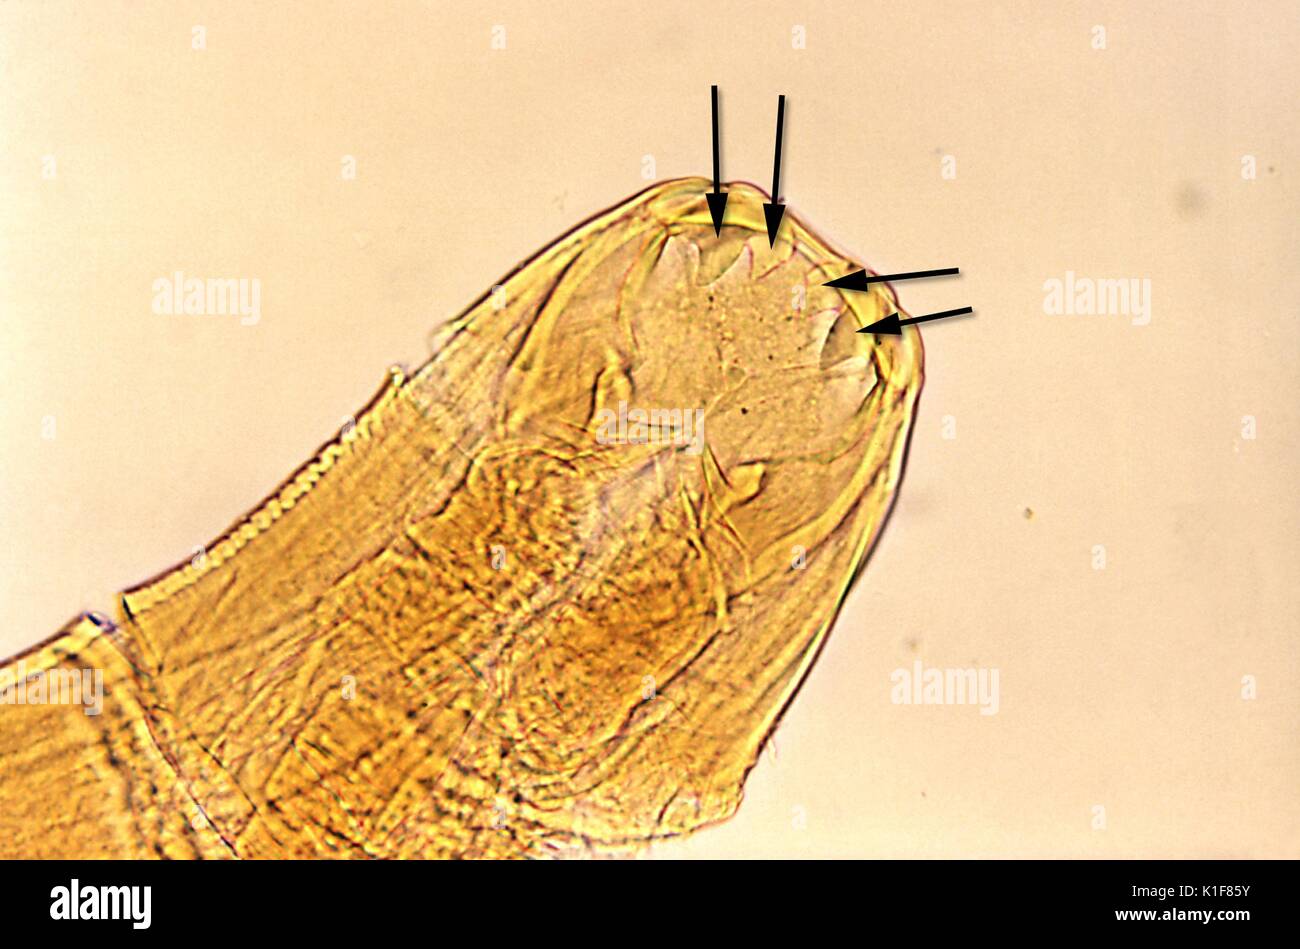 Diese unbefleckte Schliffbild deckt Mund Teile des Ancylostoma duodenale hookworm, Mag. 125 X. Die hookworm verwendet diese scharfe Schneidezähne fest an der Darmwand zu erfassen, und zwar an der richtigen Stelle befestigt, nimmt das Host? s Blut, die Nährstoffe in dieser Art und Weise. Bild mit freundlicher Genehmigung von CDC/Dr. Mae Melvin, 1982. Stockfoto